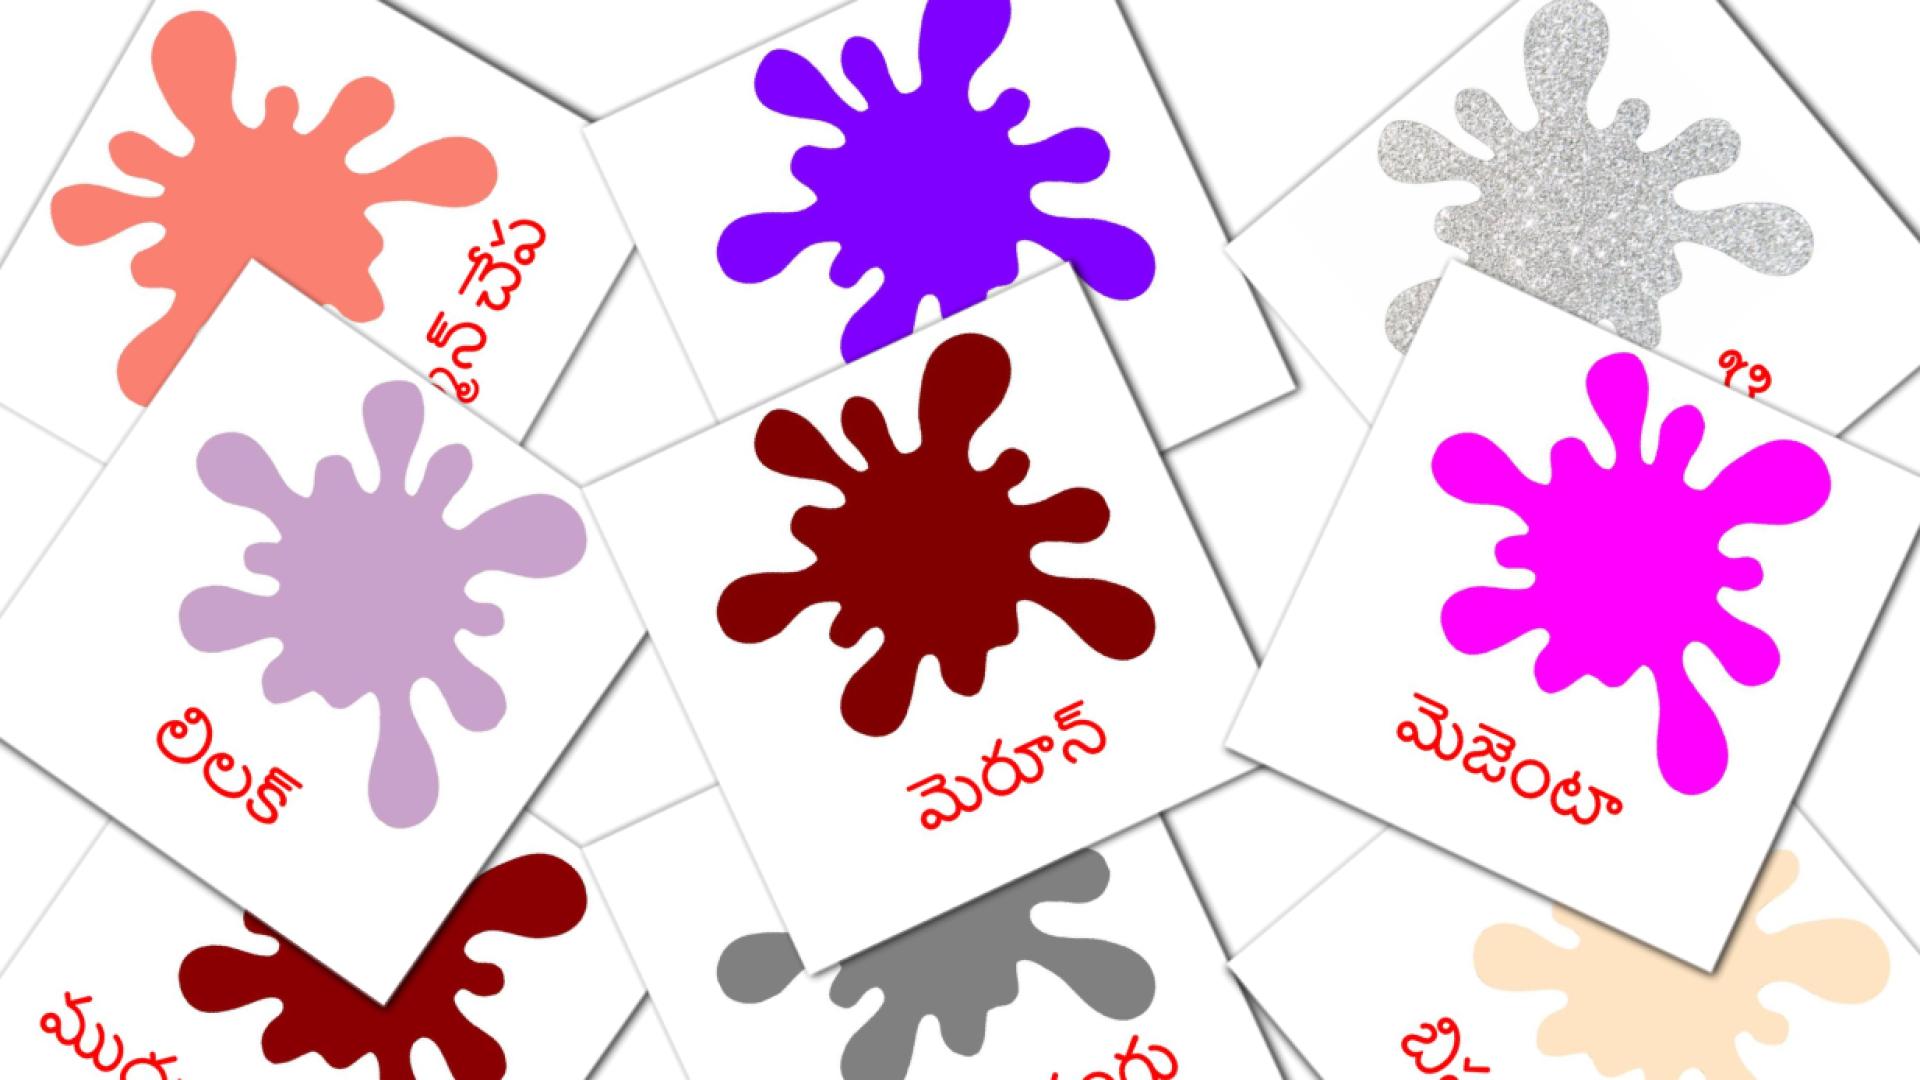 రంగులు మరియు ఆకారాలు telugu vocabulary flashcards